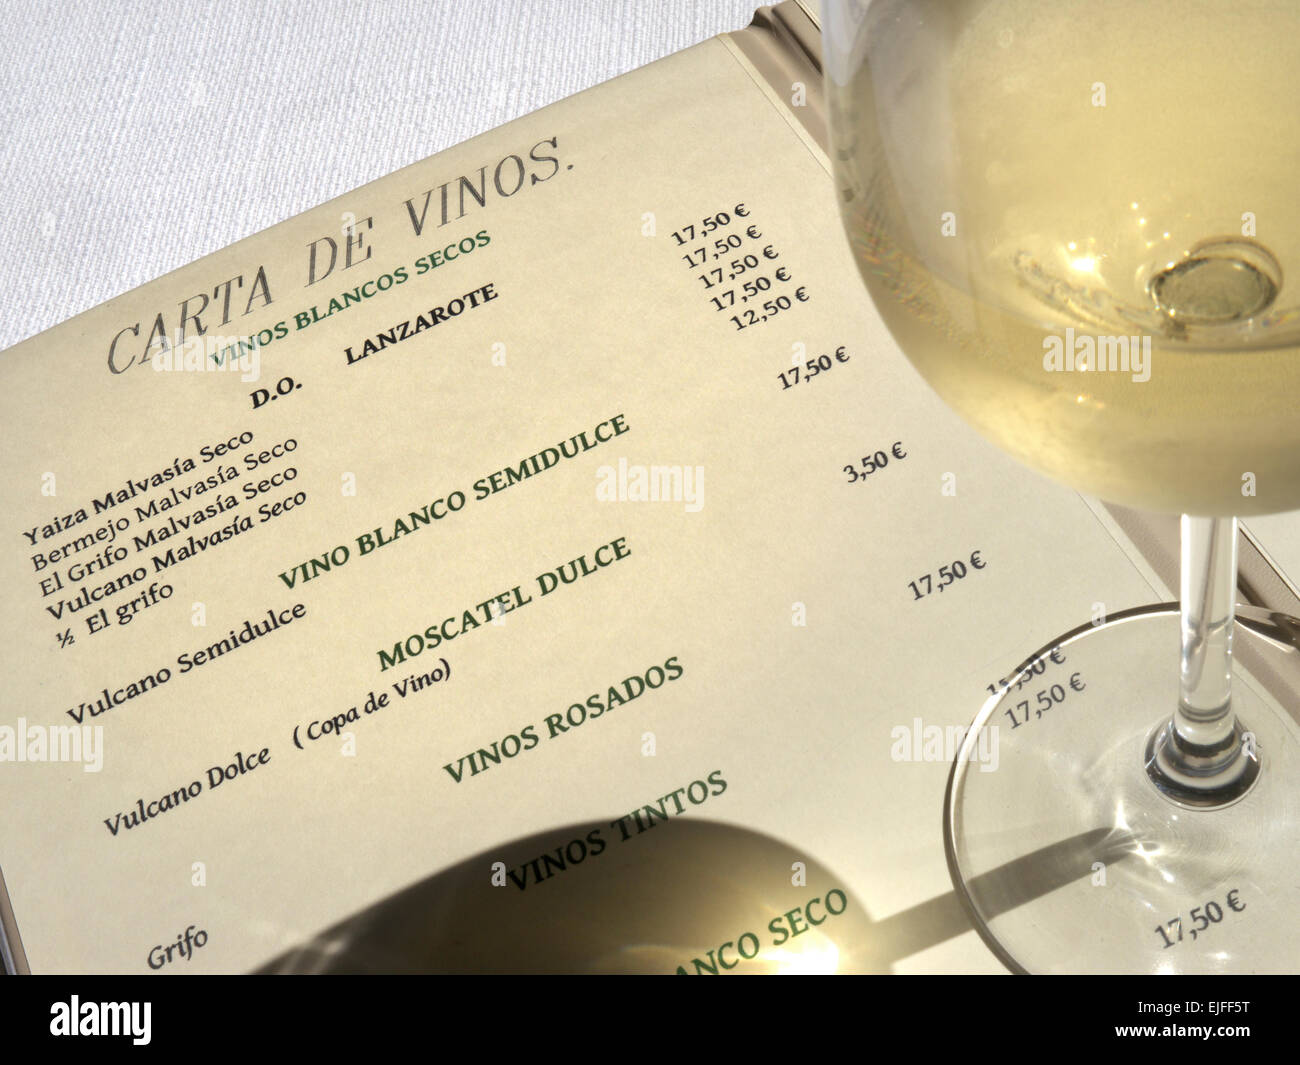 MENU VIN LANZAROTE verre de vin blanc frais et le restaurant Carte des vins avec sélection de vins proposés Lanzarote Iles Canaries Espagne Banque D'Images